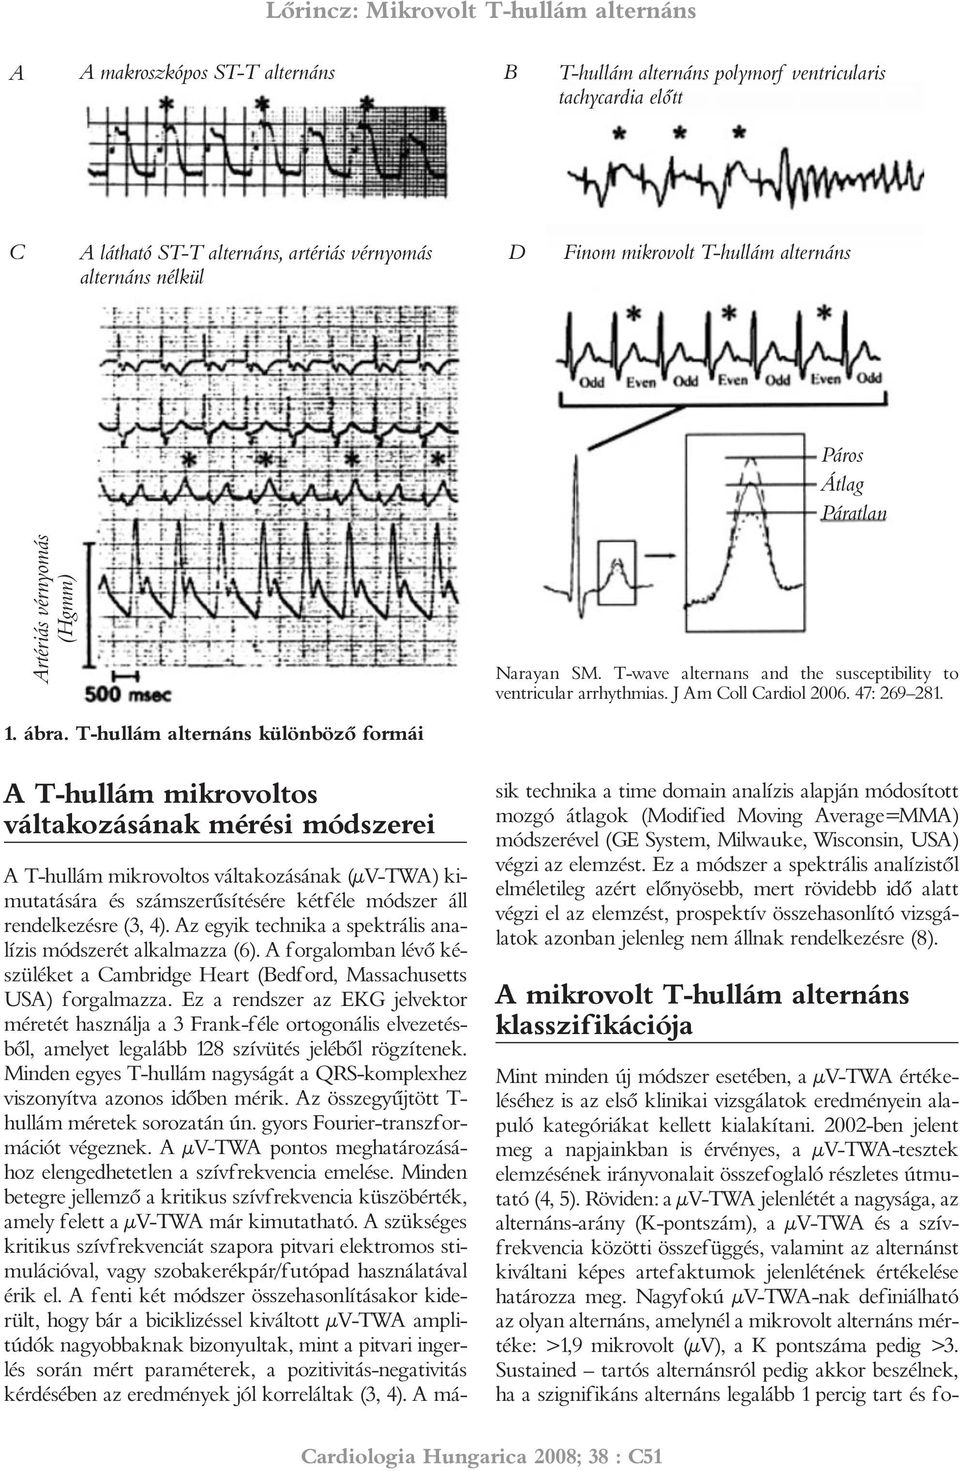 T-hullám alternáns különbözõ formái A T-hullám mikrovoltos váltakozásának mérési módszerei A T-hullám mikrovoltos váltakozásának (µv-twa) kimutatására és számszerûsítésére kétféle módszer áll